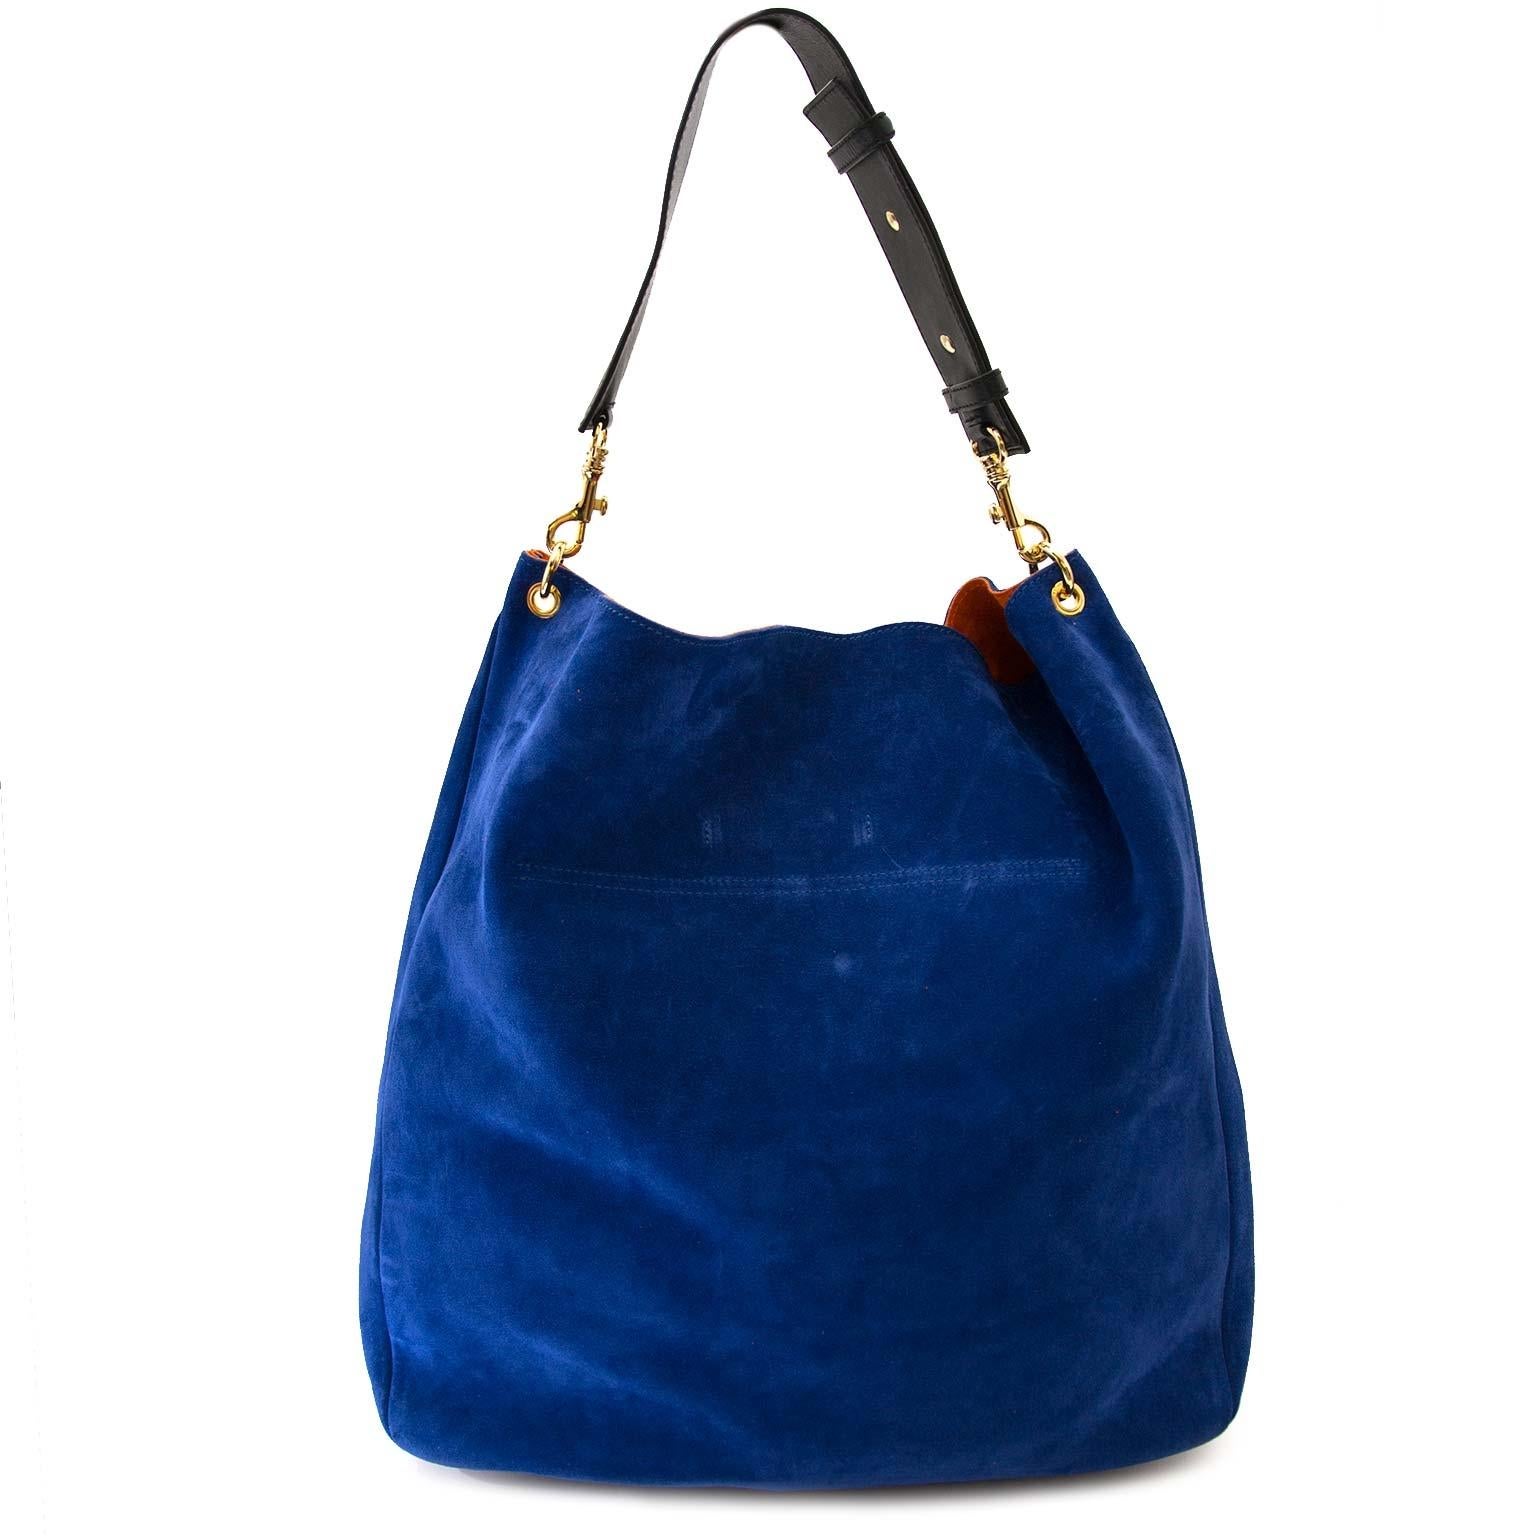 royal blue suede bag